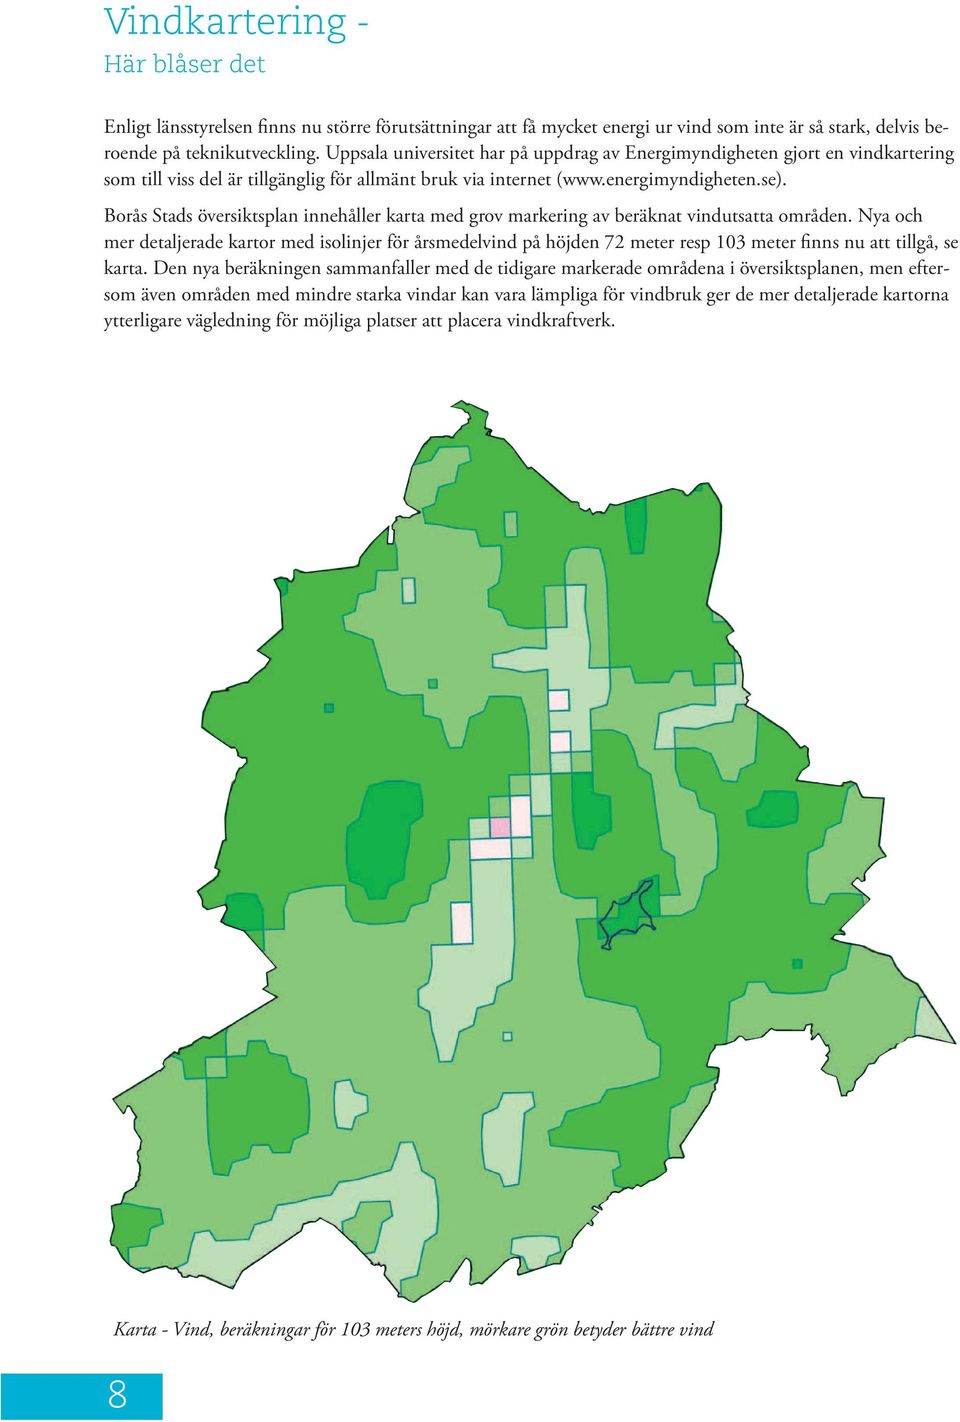 Borås Stads översiktsplan innehåller karta med grov markering av beräknat vindutsatta områden.